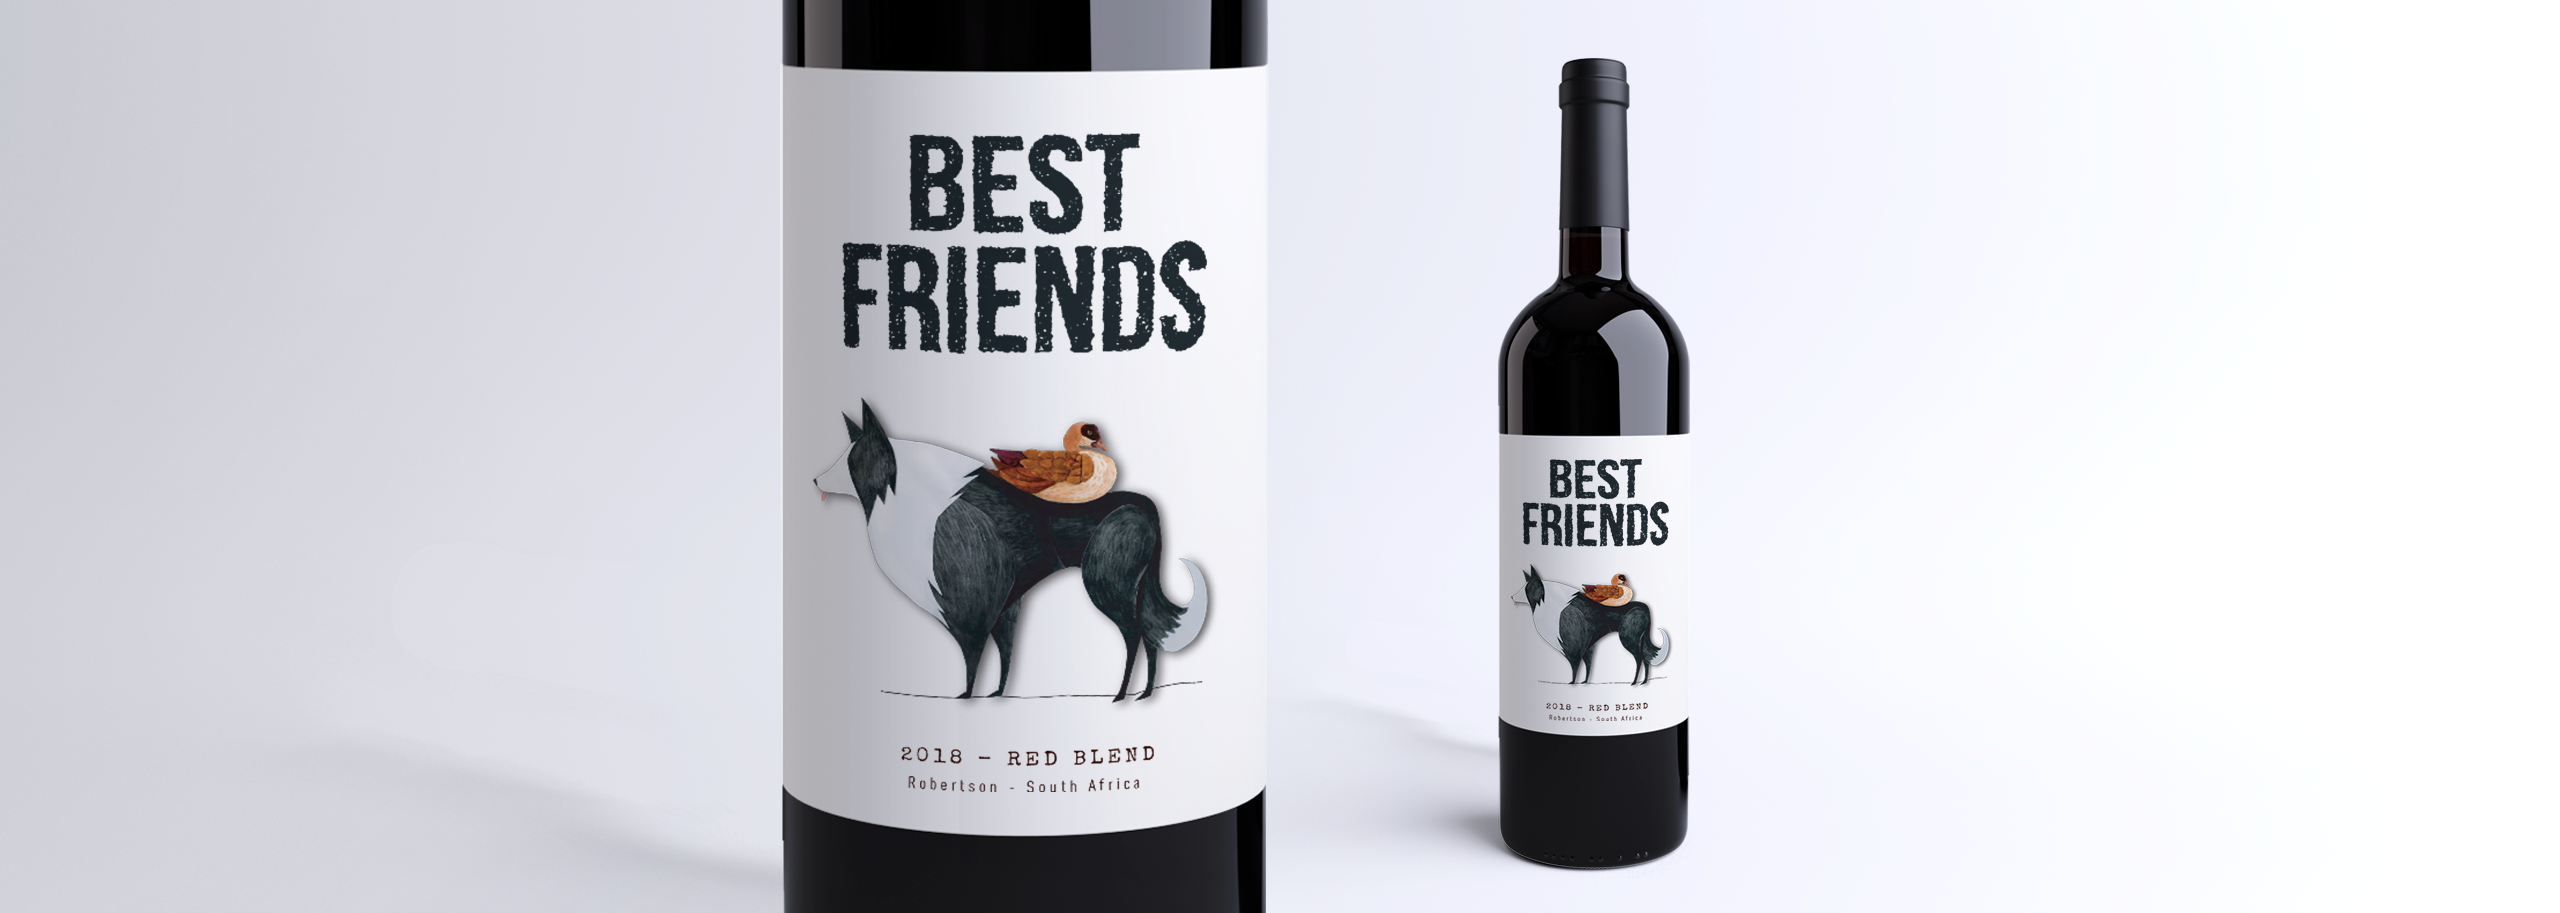 Best Friends - Zandvliet Wine Label Design-3